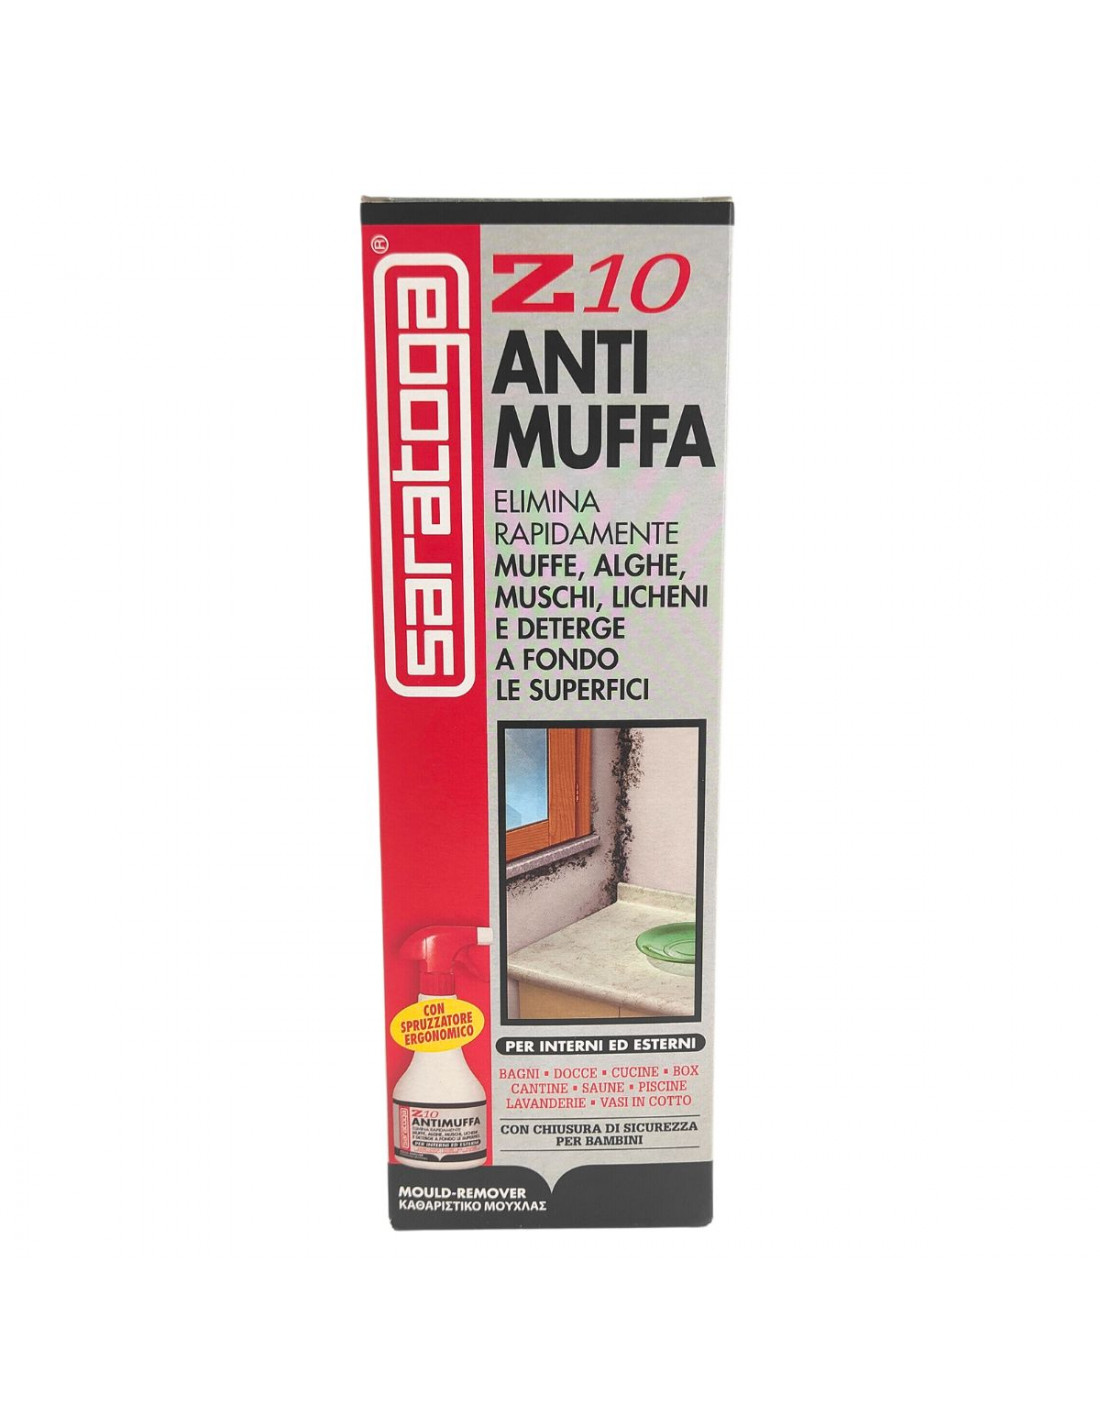 Anti muffa Z10 500 ml Saratoga in Offerta Yagos